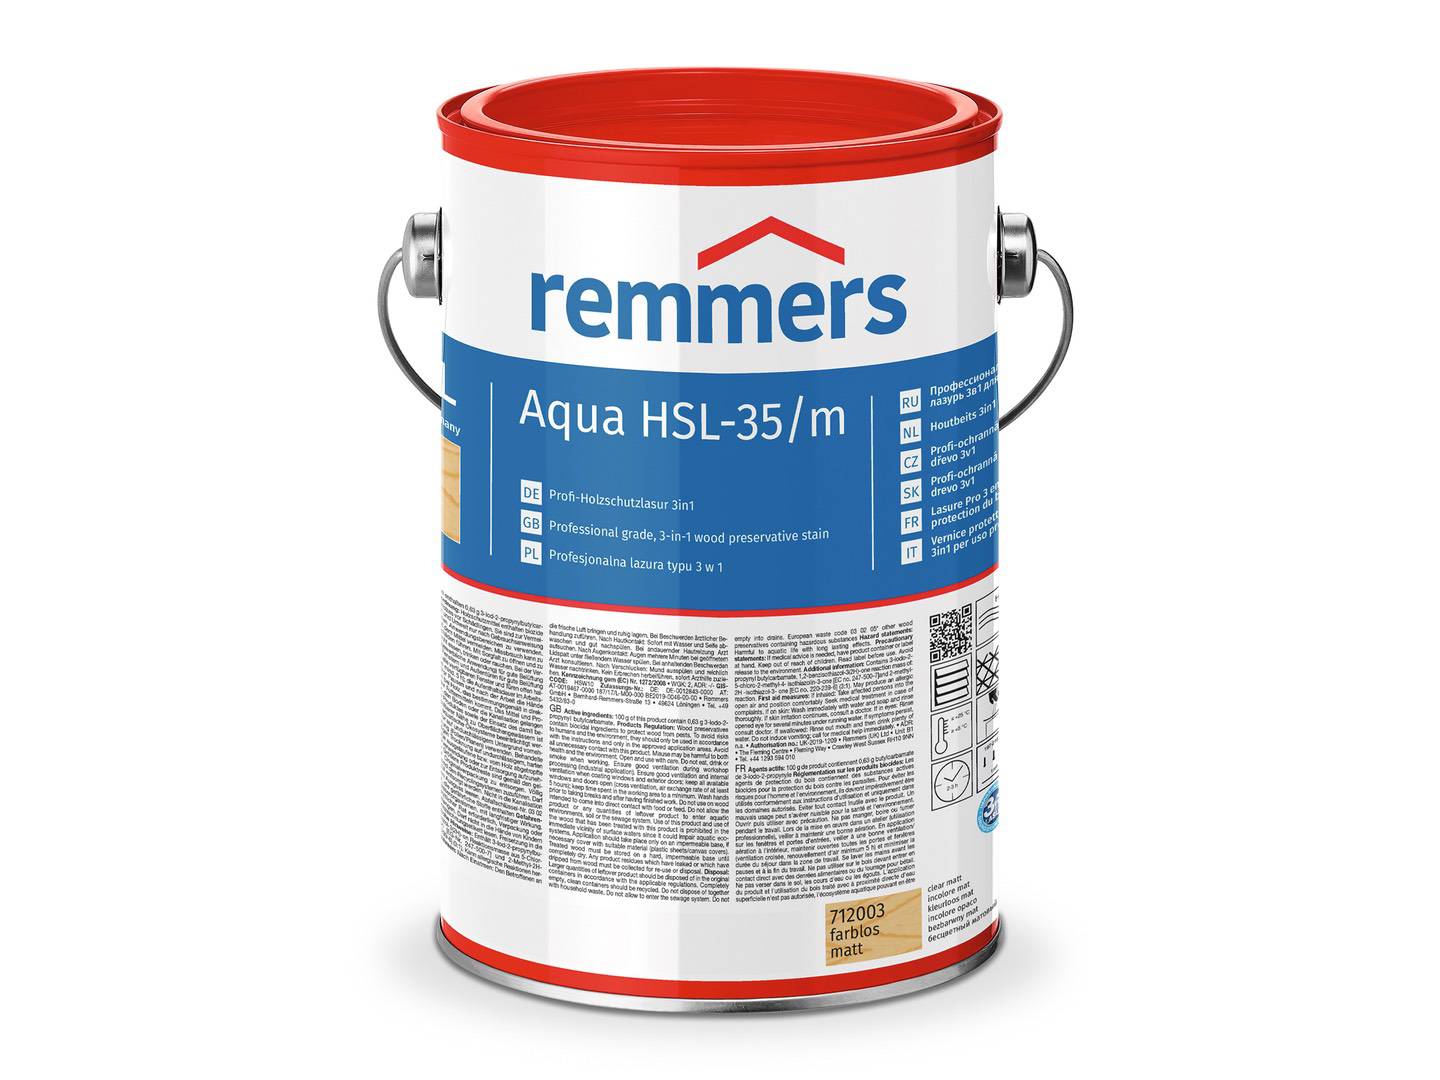 REMMERS Aqua HSL-35/m-Profi-Holzschutz-Lasur 3in1